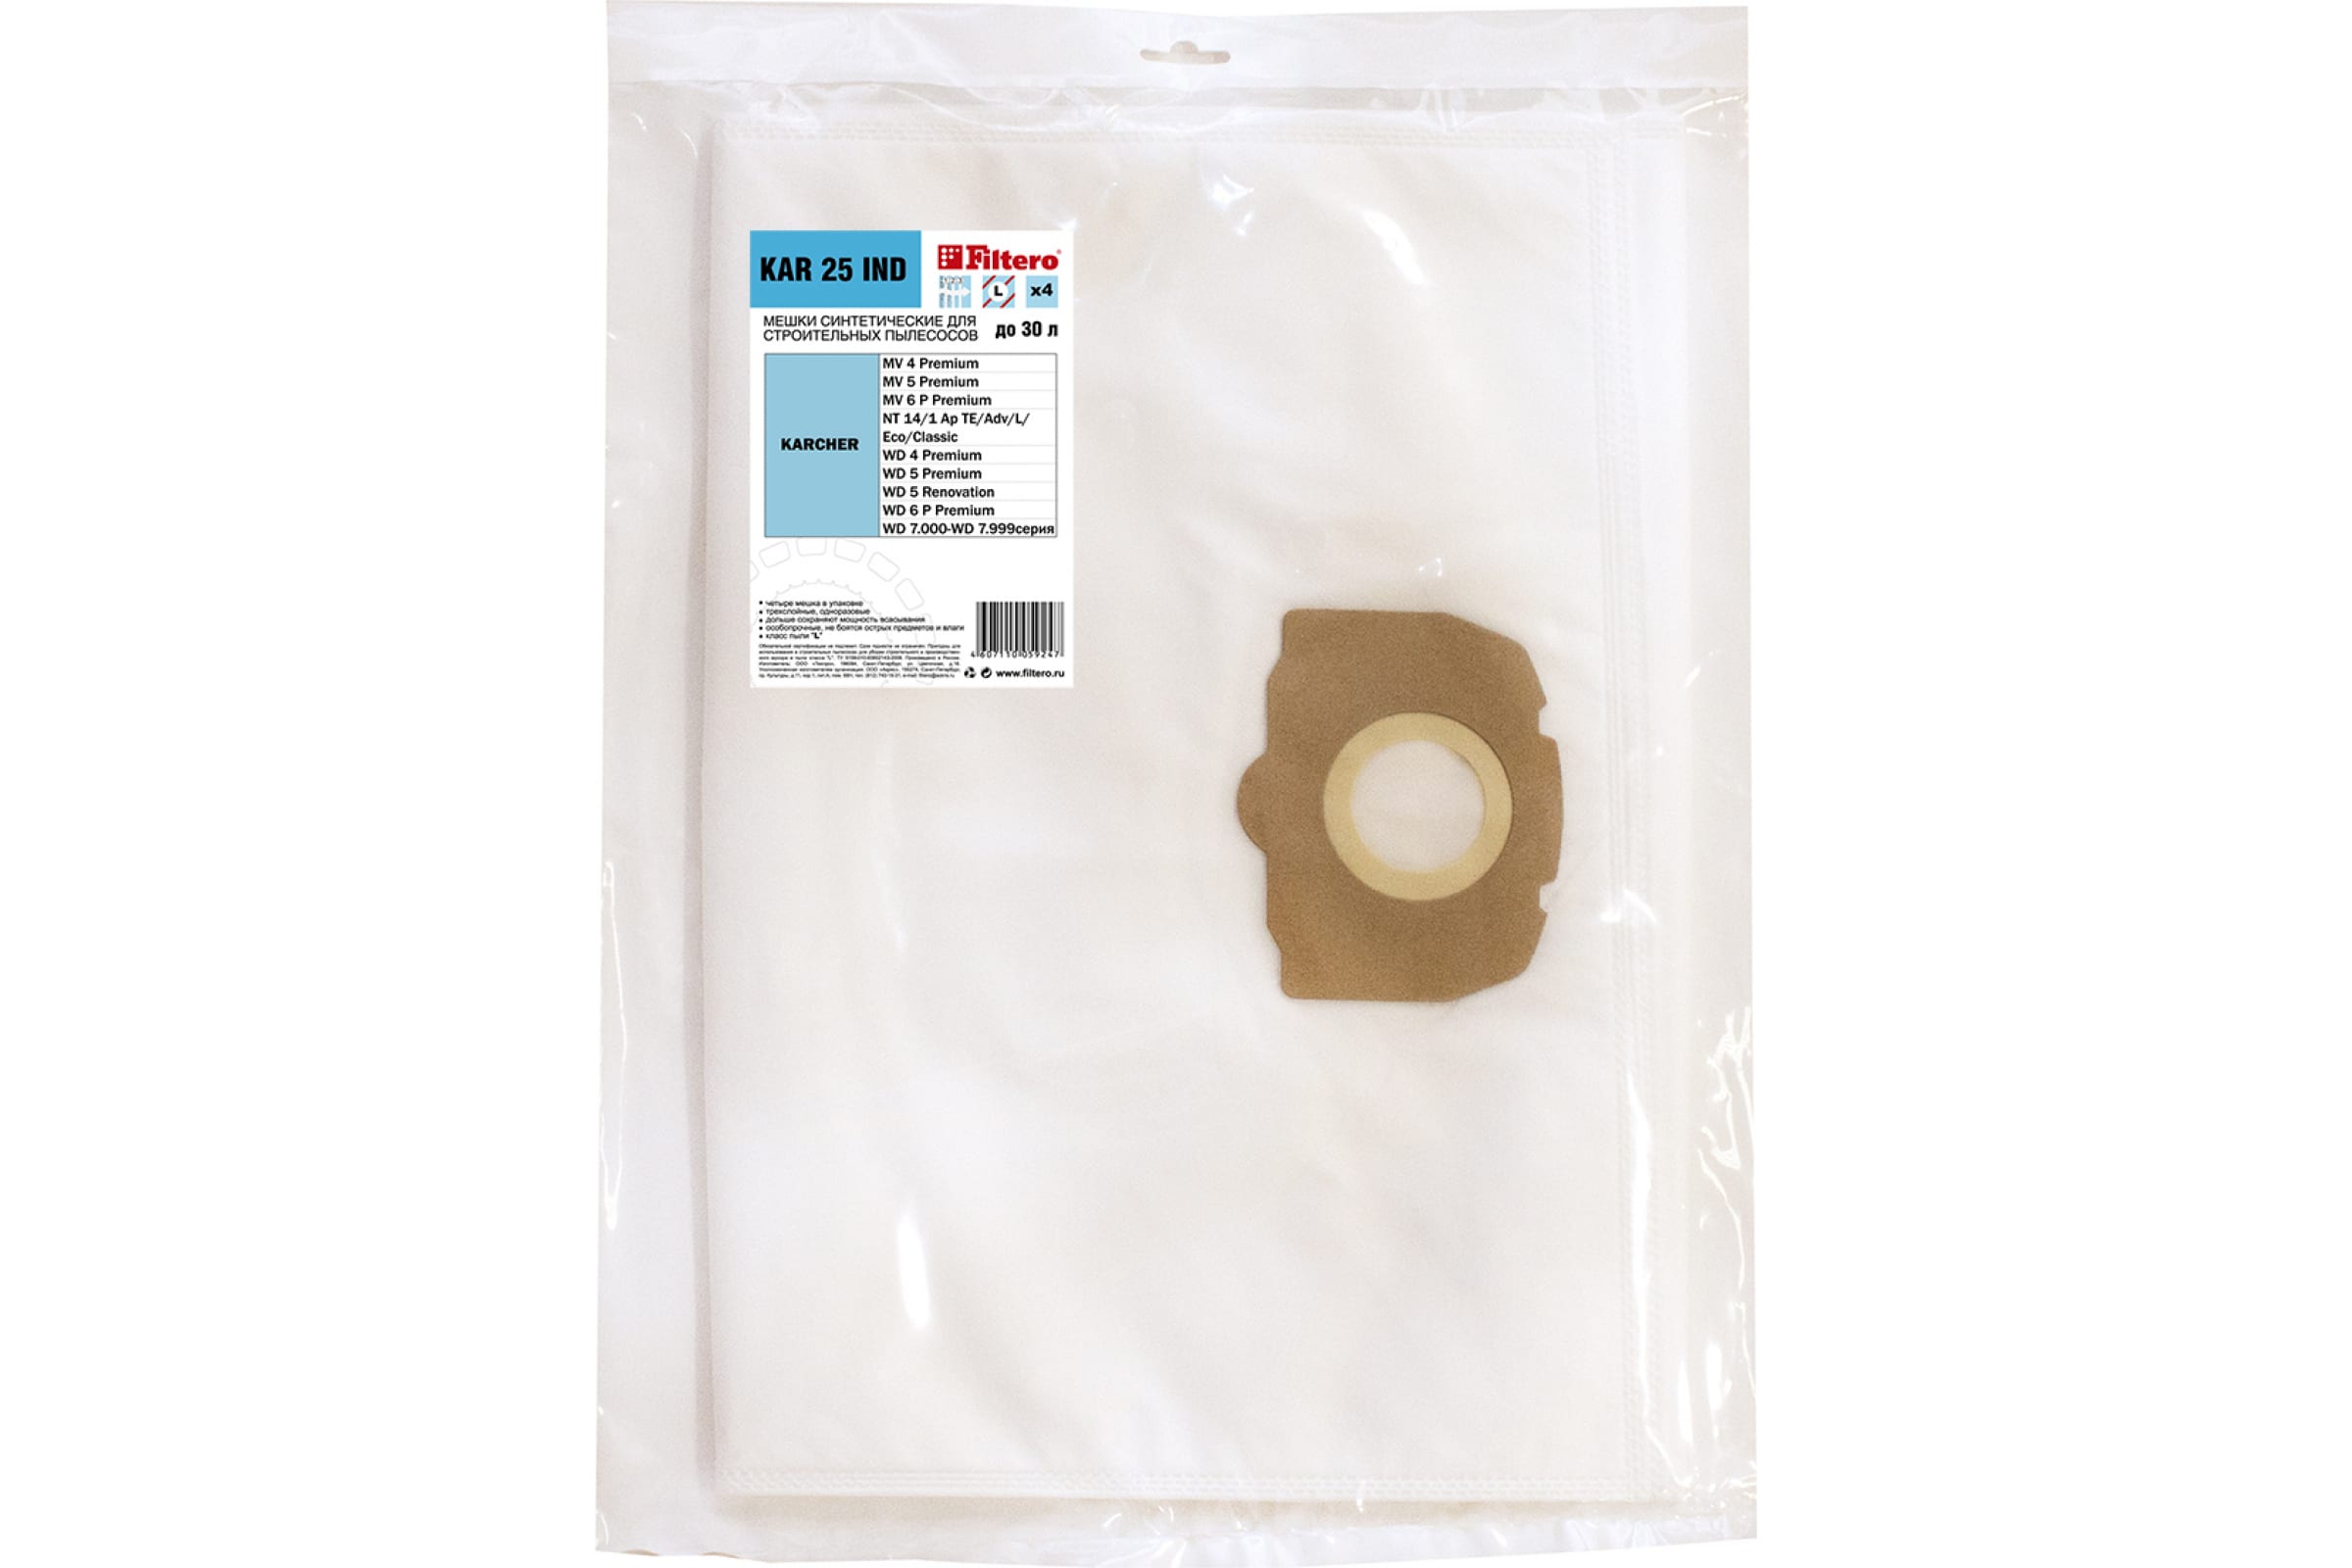 Мешки трехслойные синтетические KAR 25 IND (4 шт; 30 л) для пылесоса Karcher FILTERO 05924 трехслойные синтетические мешки для пылесоса karcher filtero